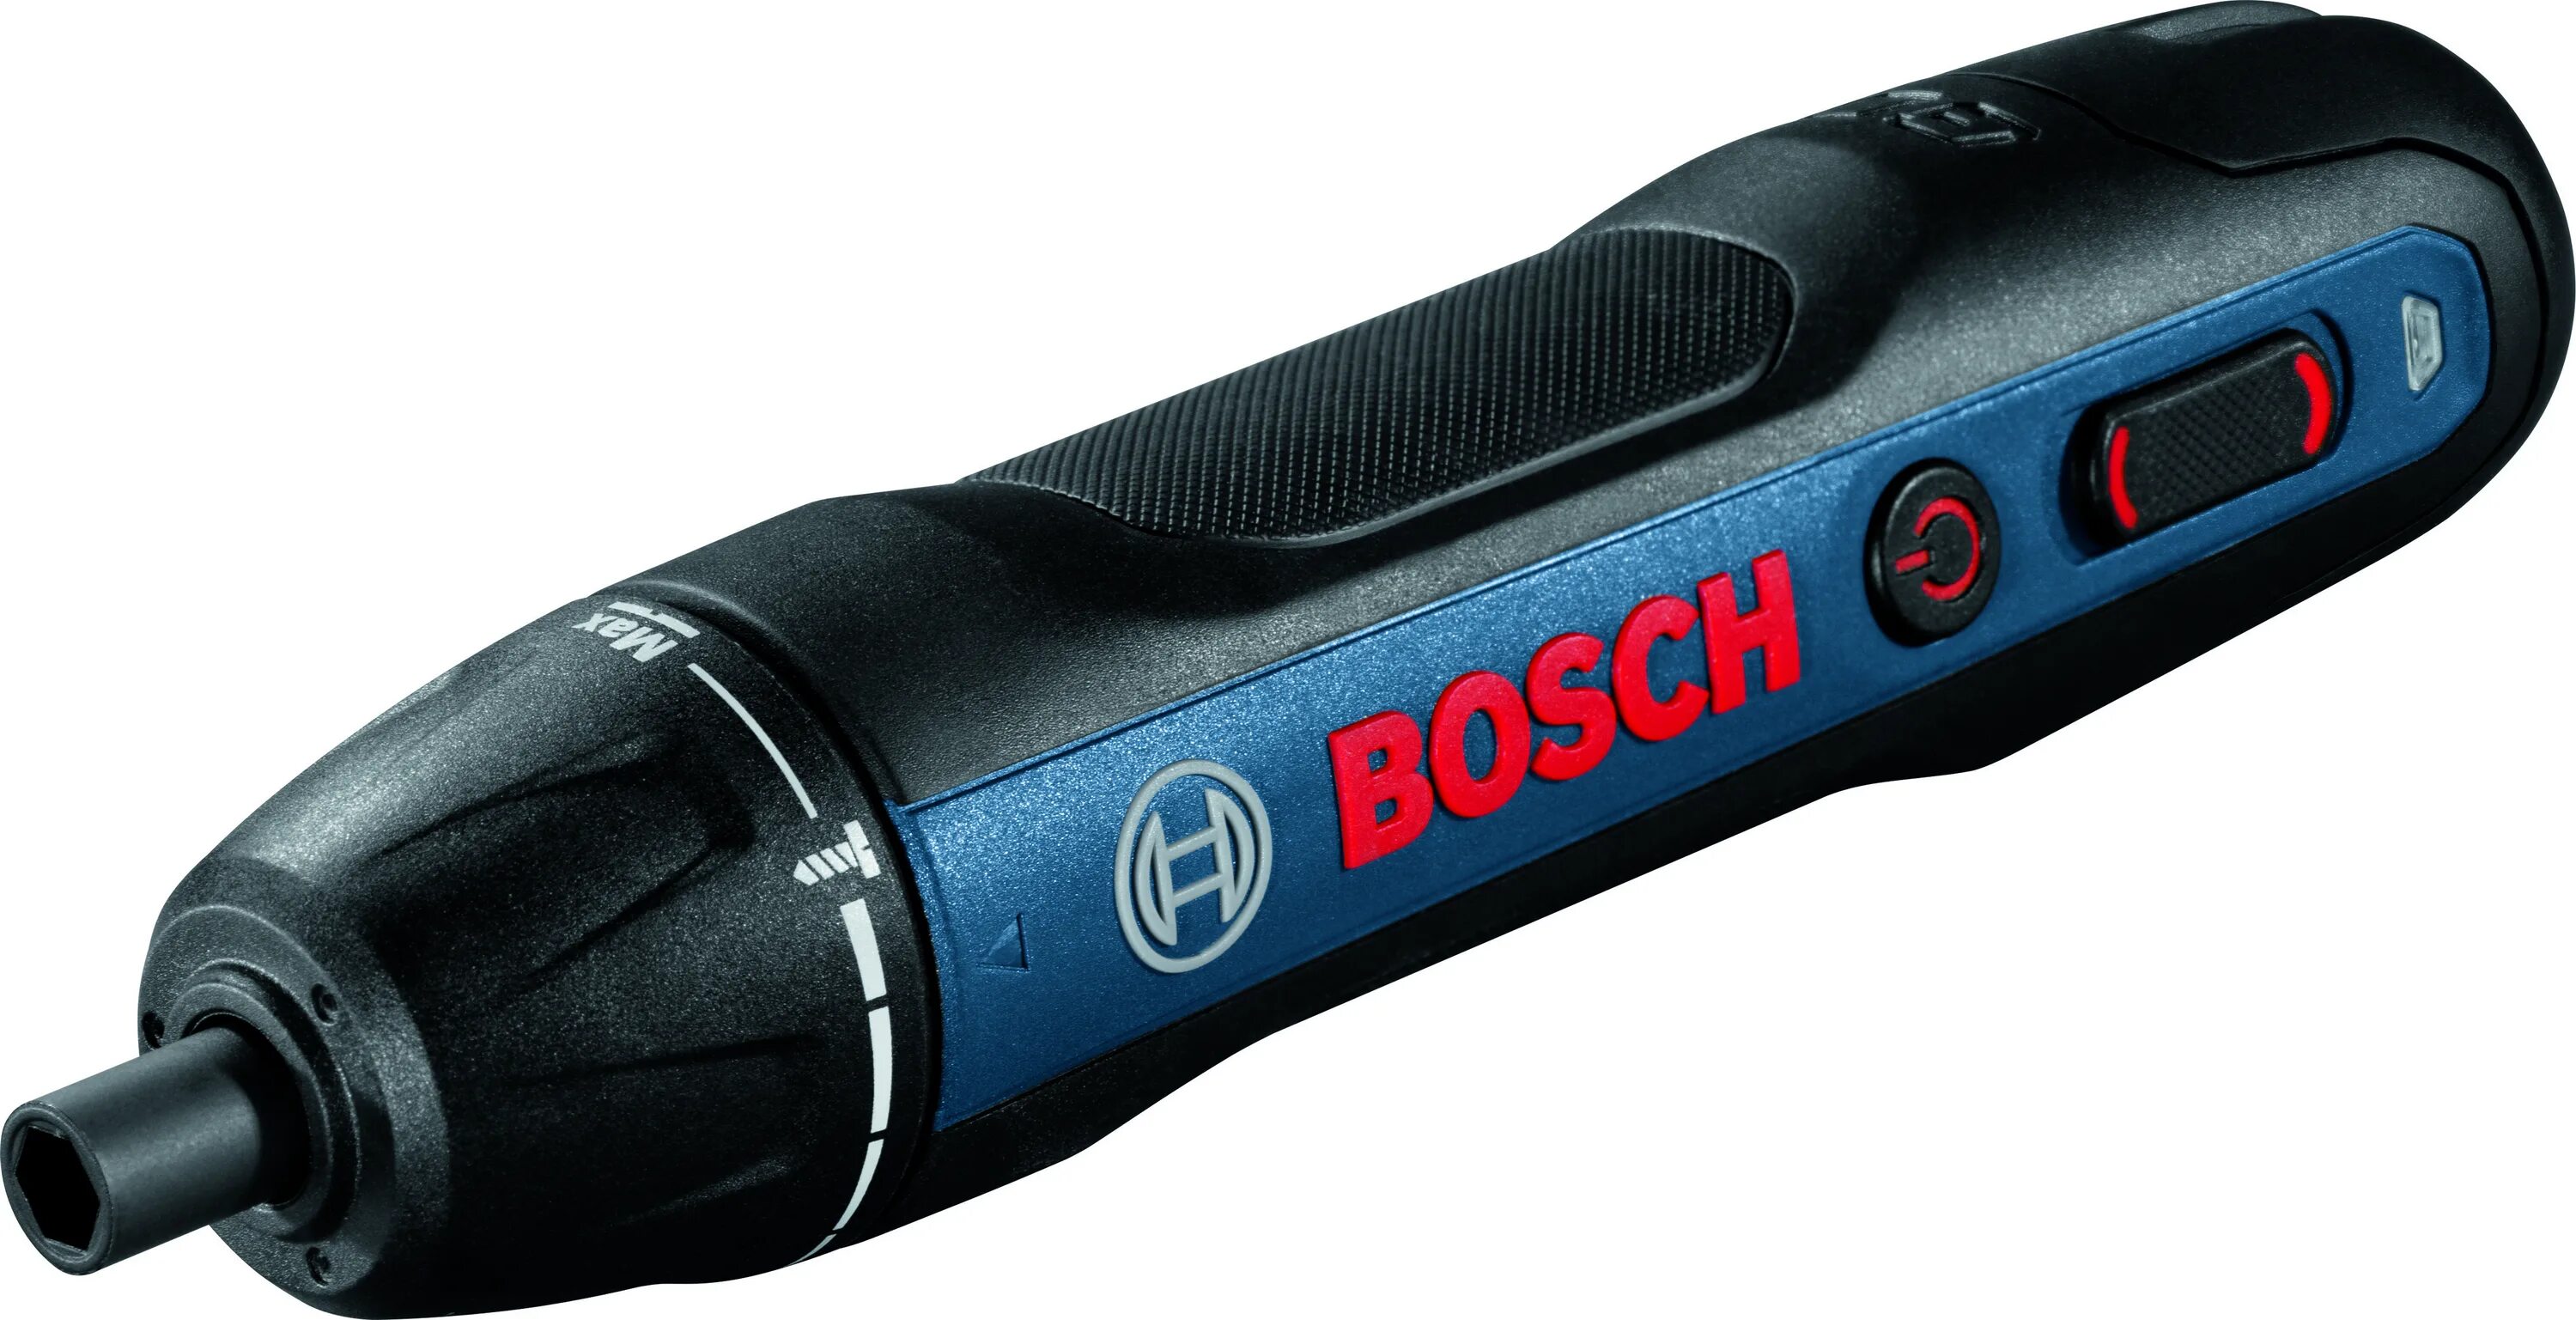 Купить отвертку bosch. Отвертка Bosch go 2. Аккумуляторная отвертка Bosch go 2 06019h2103. Отвертка аккумуляторная go 2 (0.601.9h2.103) Bosch. Электроотвертка Bosch go professional 06019h2100.